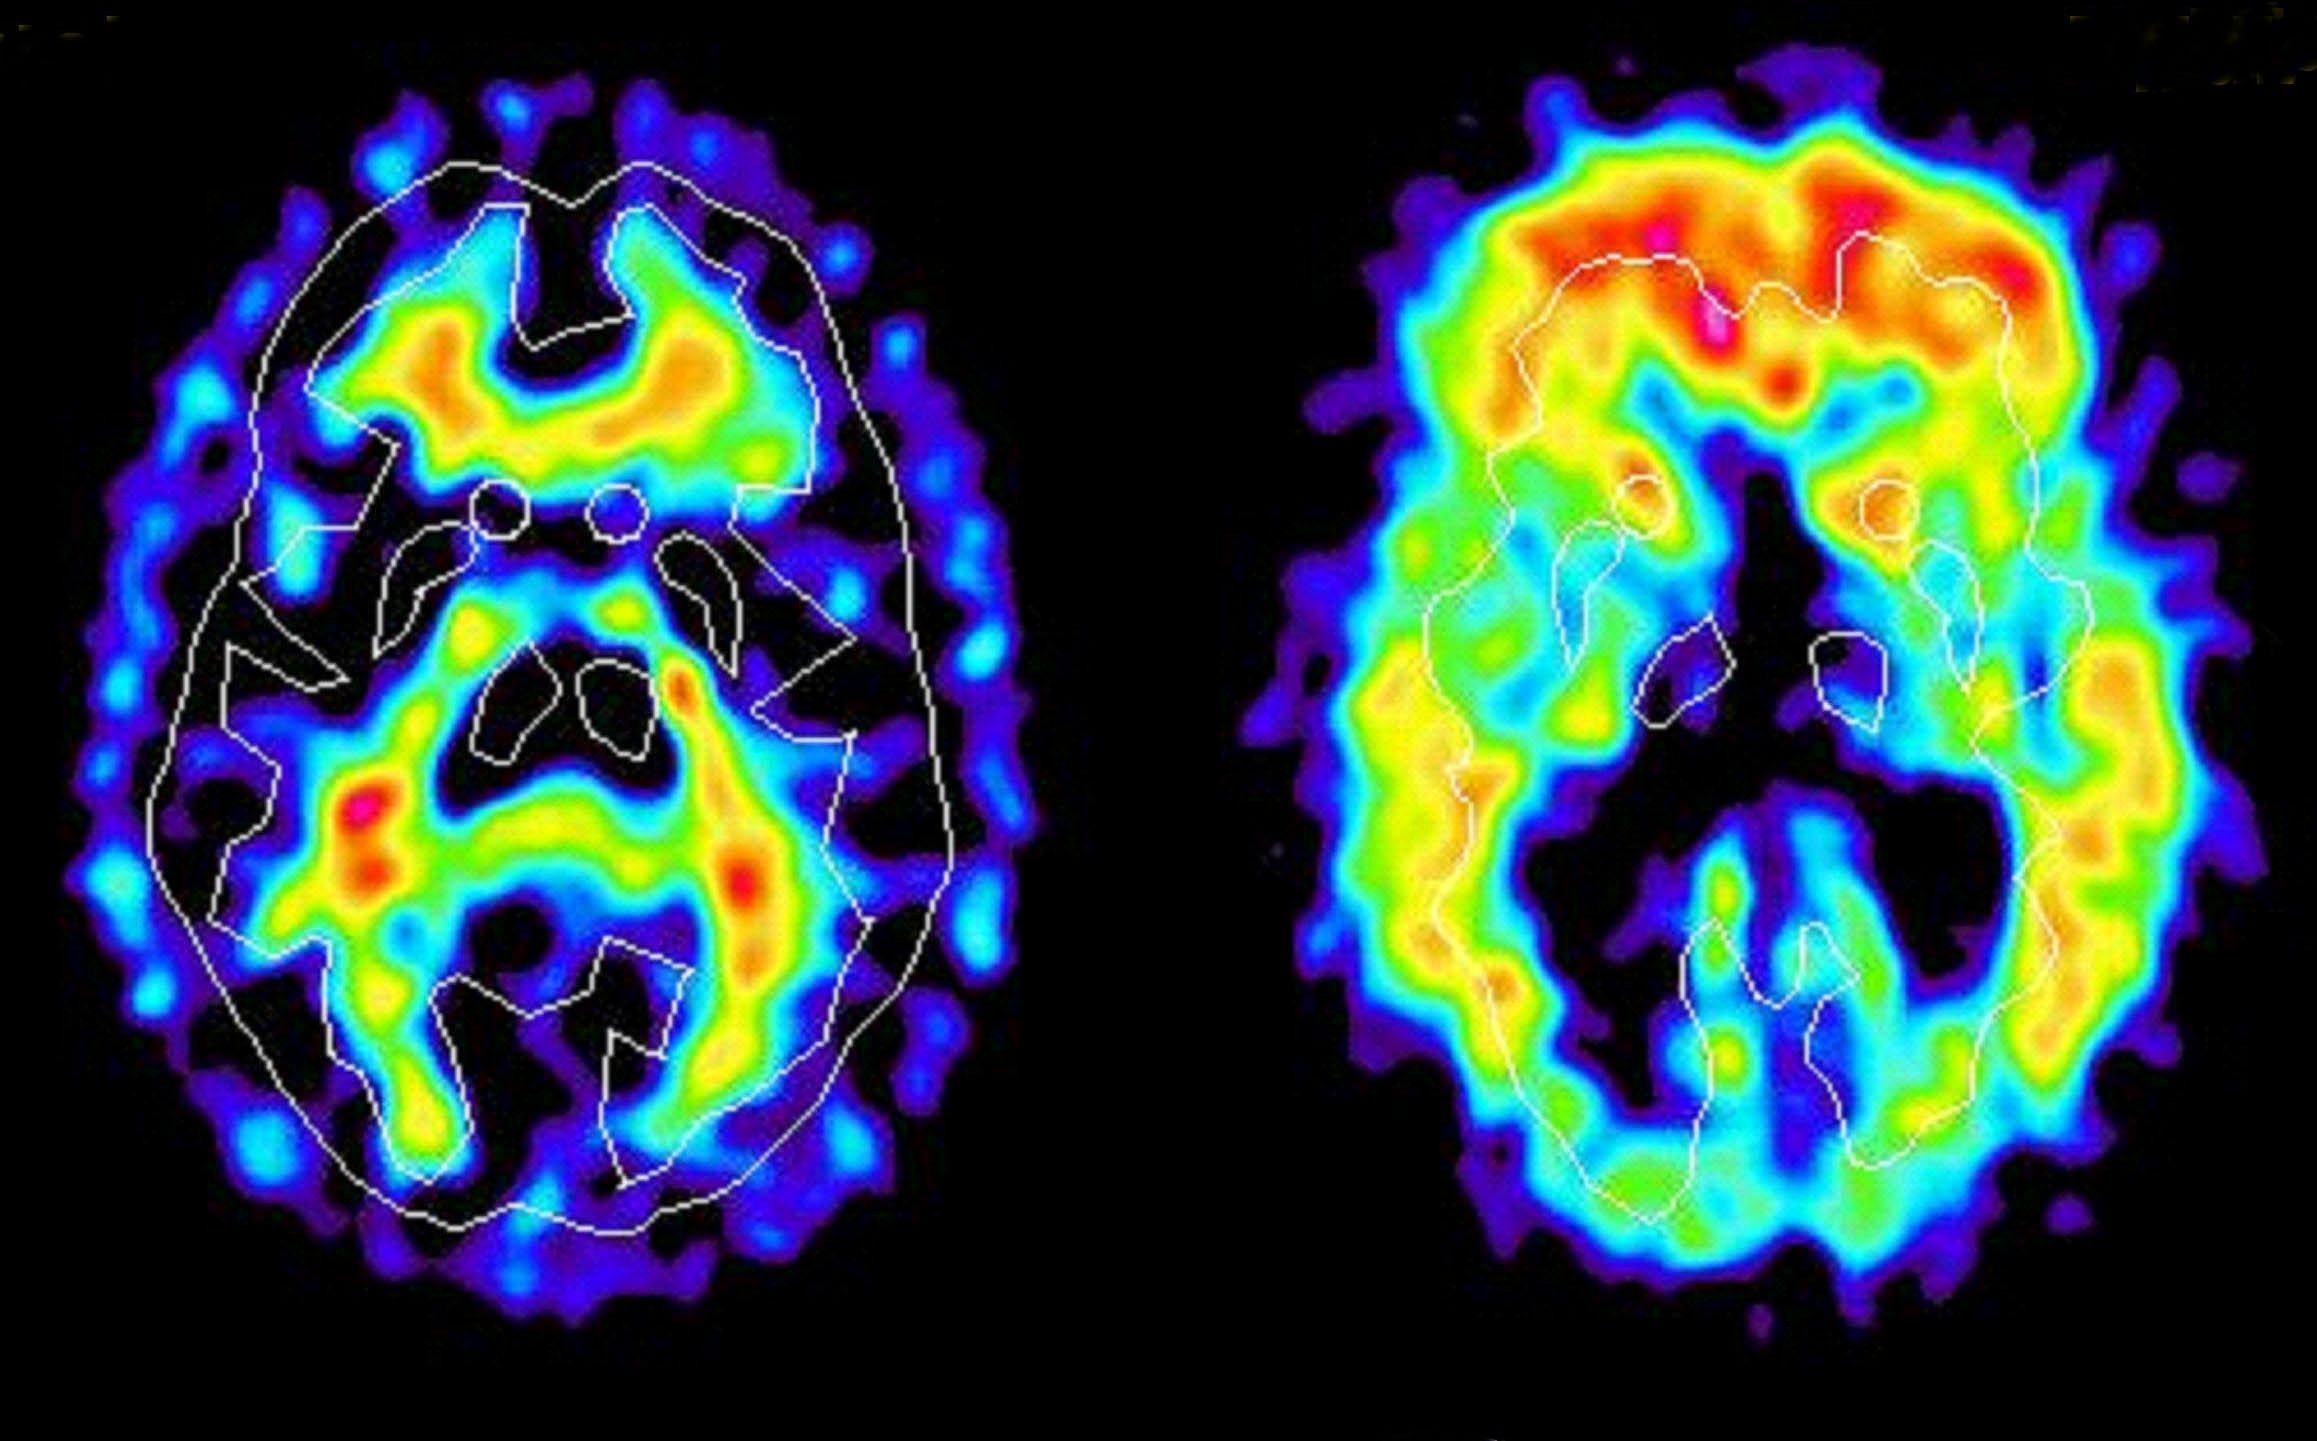 Bilden till vänster föreställer hjärnan hos en frisk person medan bilden till höger visar hjärnan hos en person drabbad av alzheimer.  